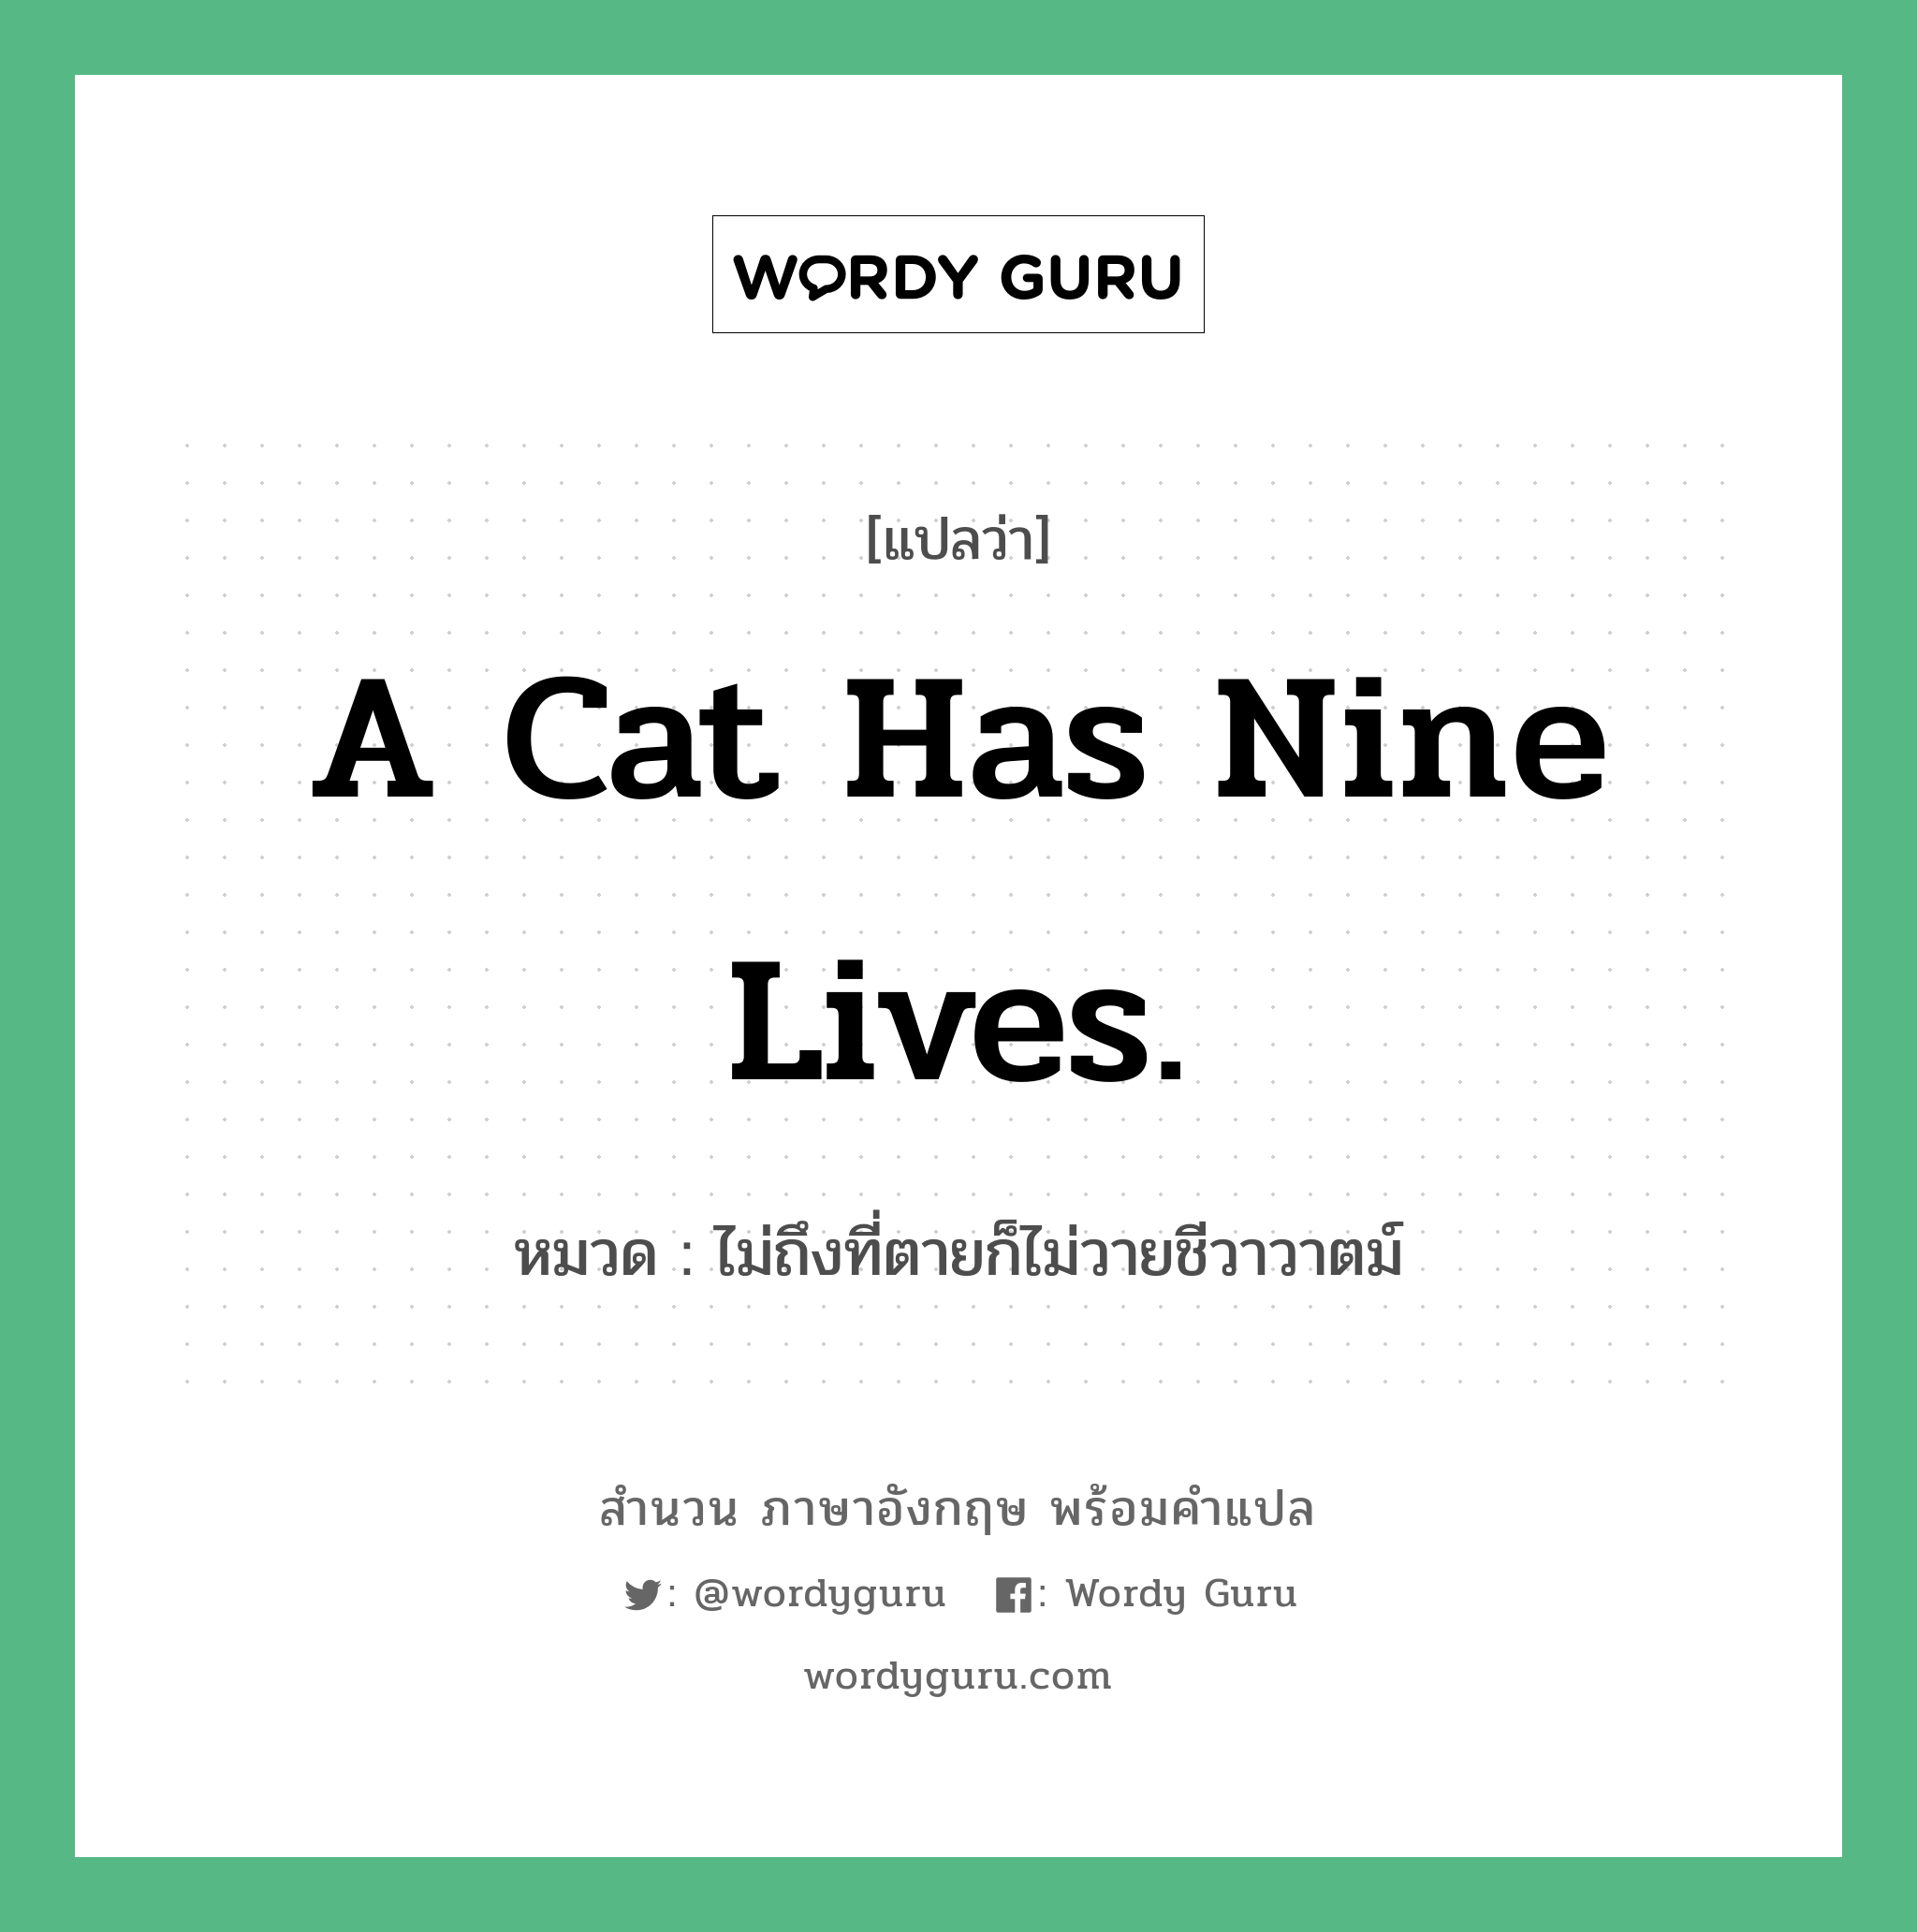 A cat has nine lives. แปลว่า?, สำนวนภาษาอังกฤษ A cat has nine lives. หมวด ไม่ถึงที่ตายก็ไม่วายชีวาวาตม์ คำสุภาษิต ภาษาอังกฤษ หมวด คำสุภาษิต ภาษาอังกฤษ